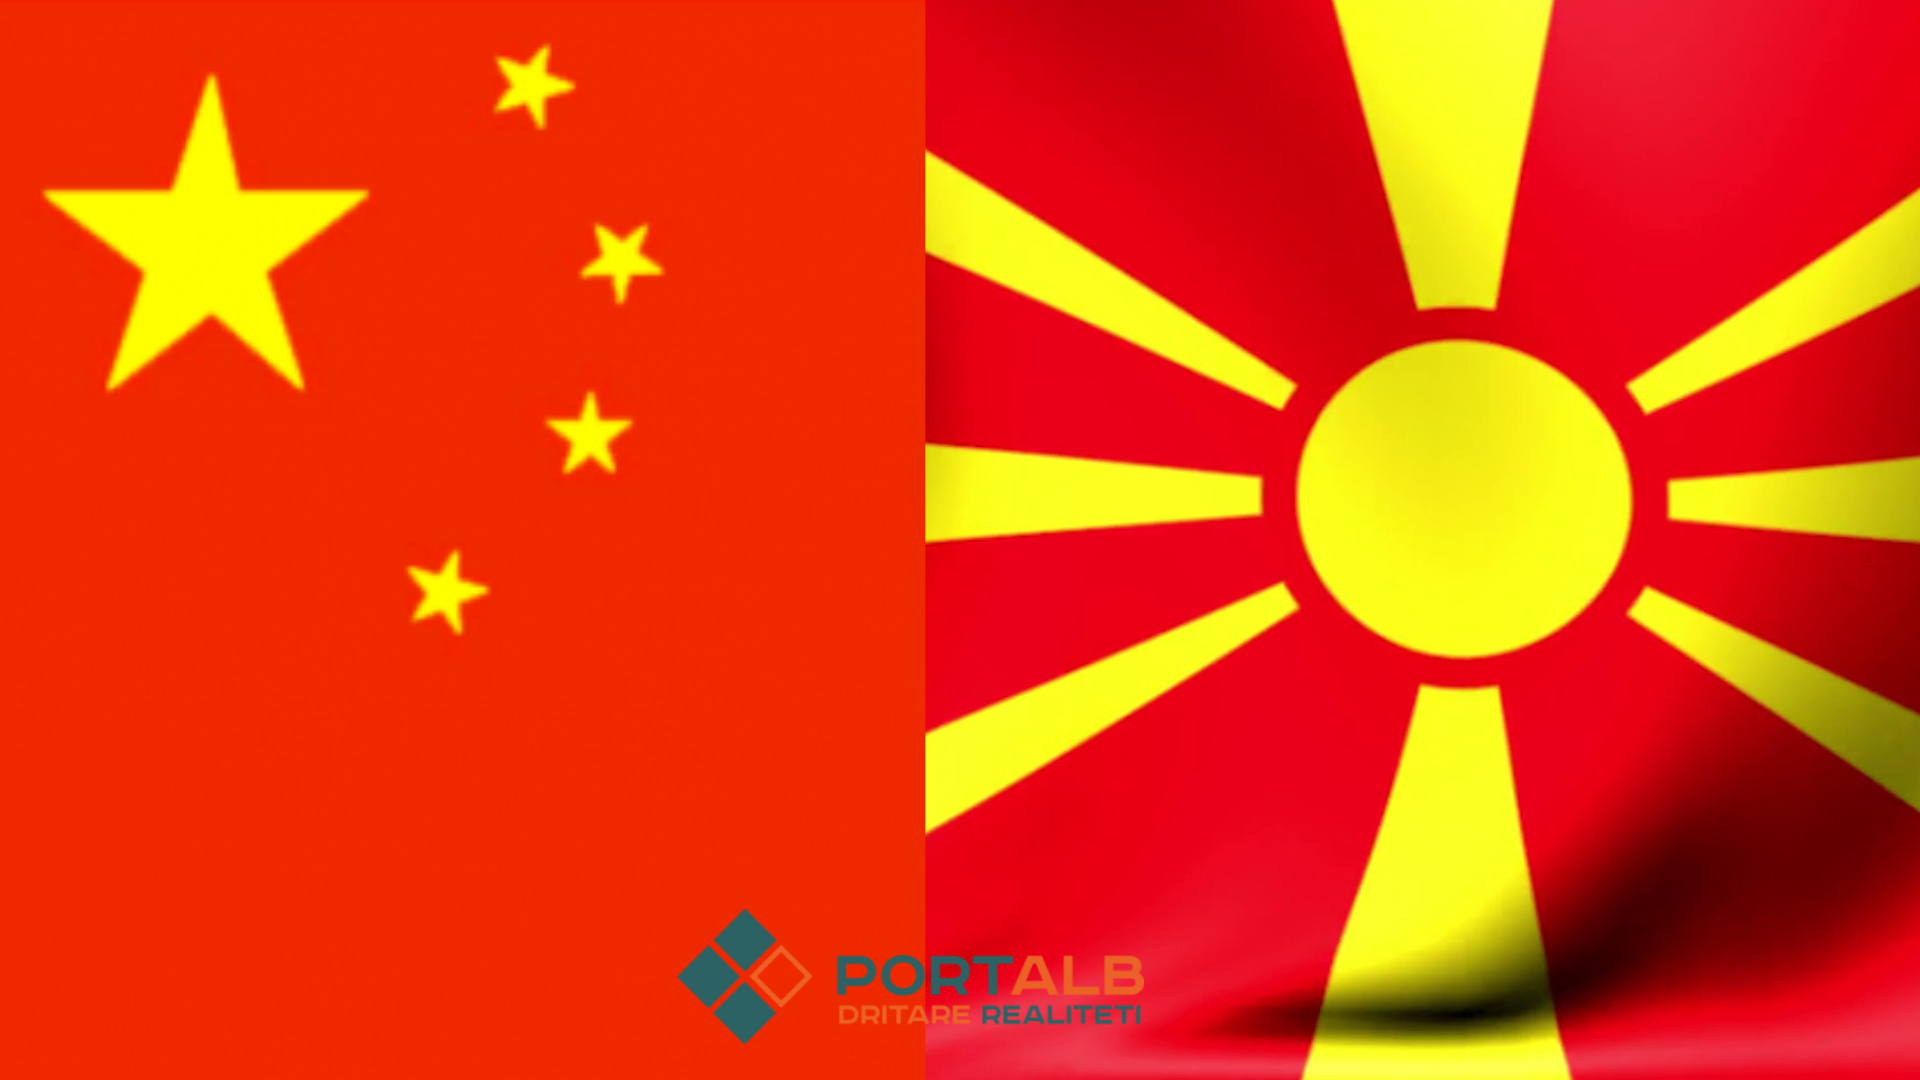 Foto ilustrim Canva, flamuri i Kinës dhe flamuri i Maqedonisë së Veriut nga Portalb.mk